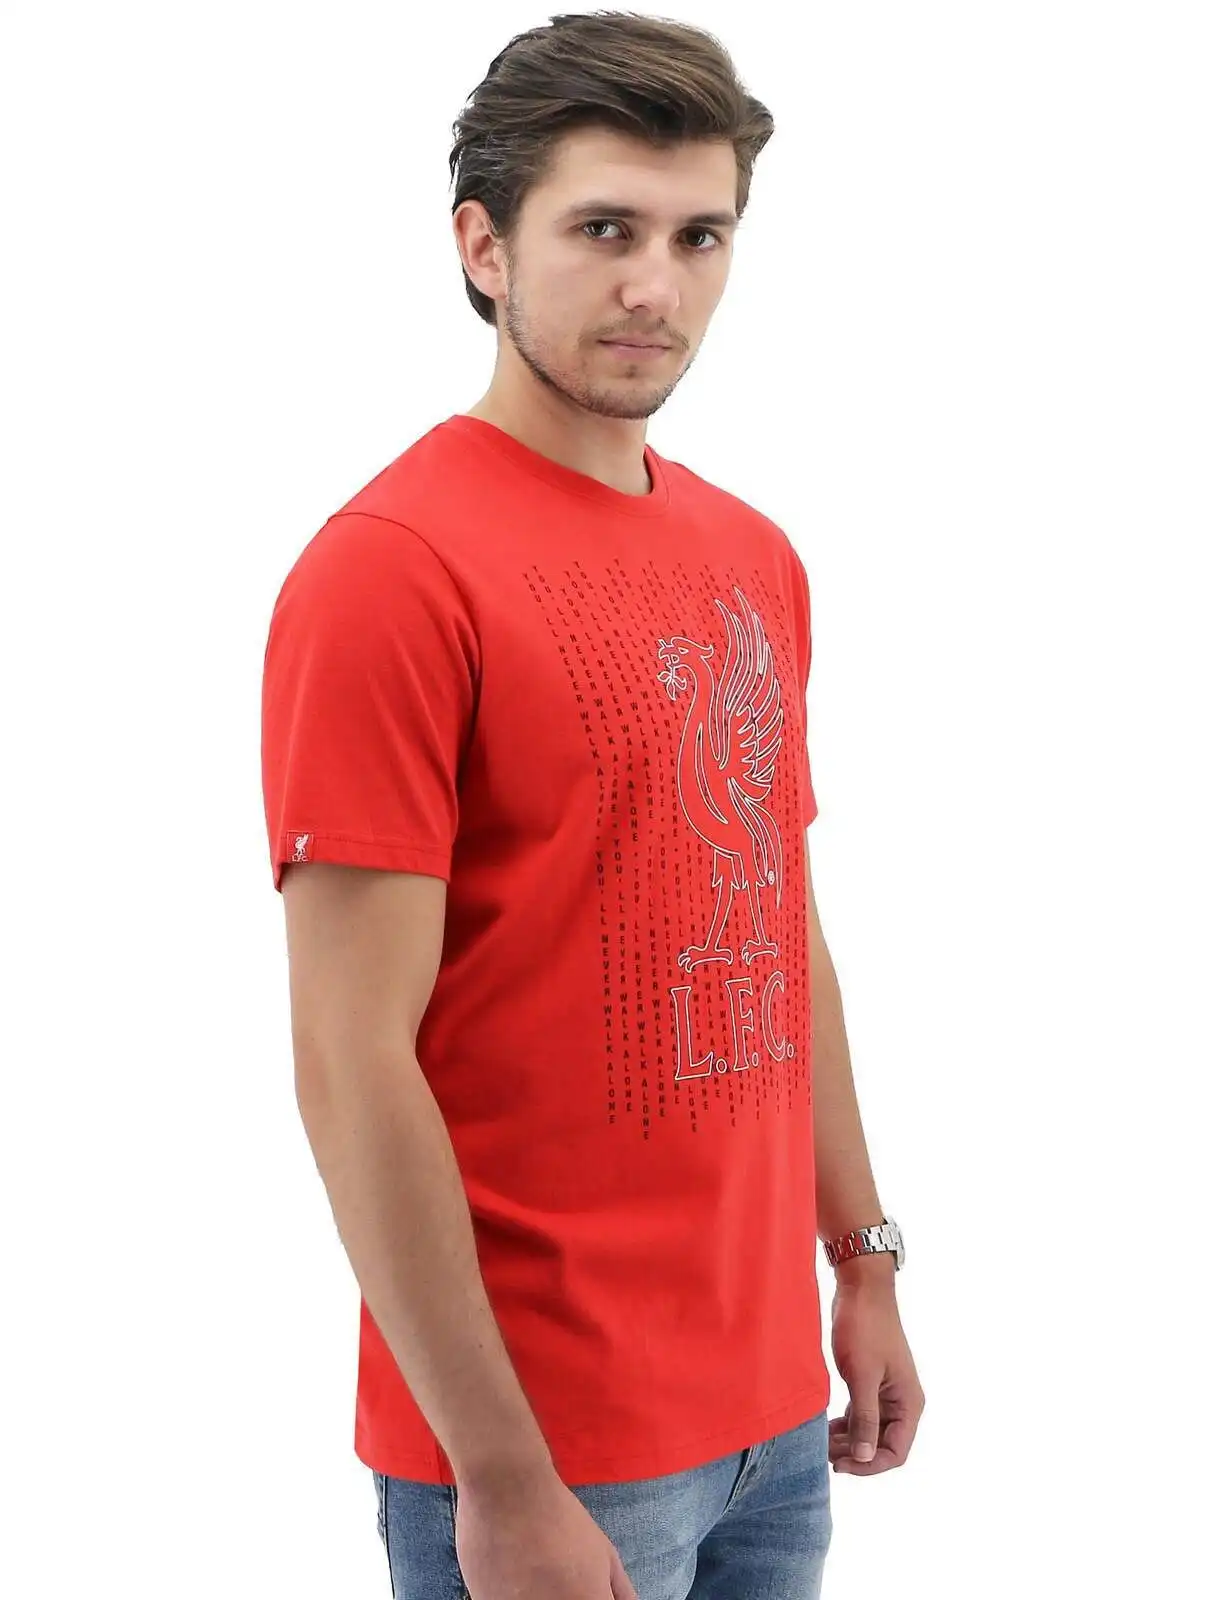 Liverpool FC Men's Crew T Shirt Tee Top Soccer Football - Red Liverbird